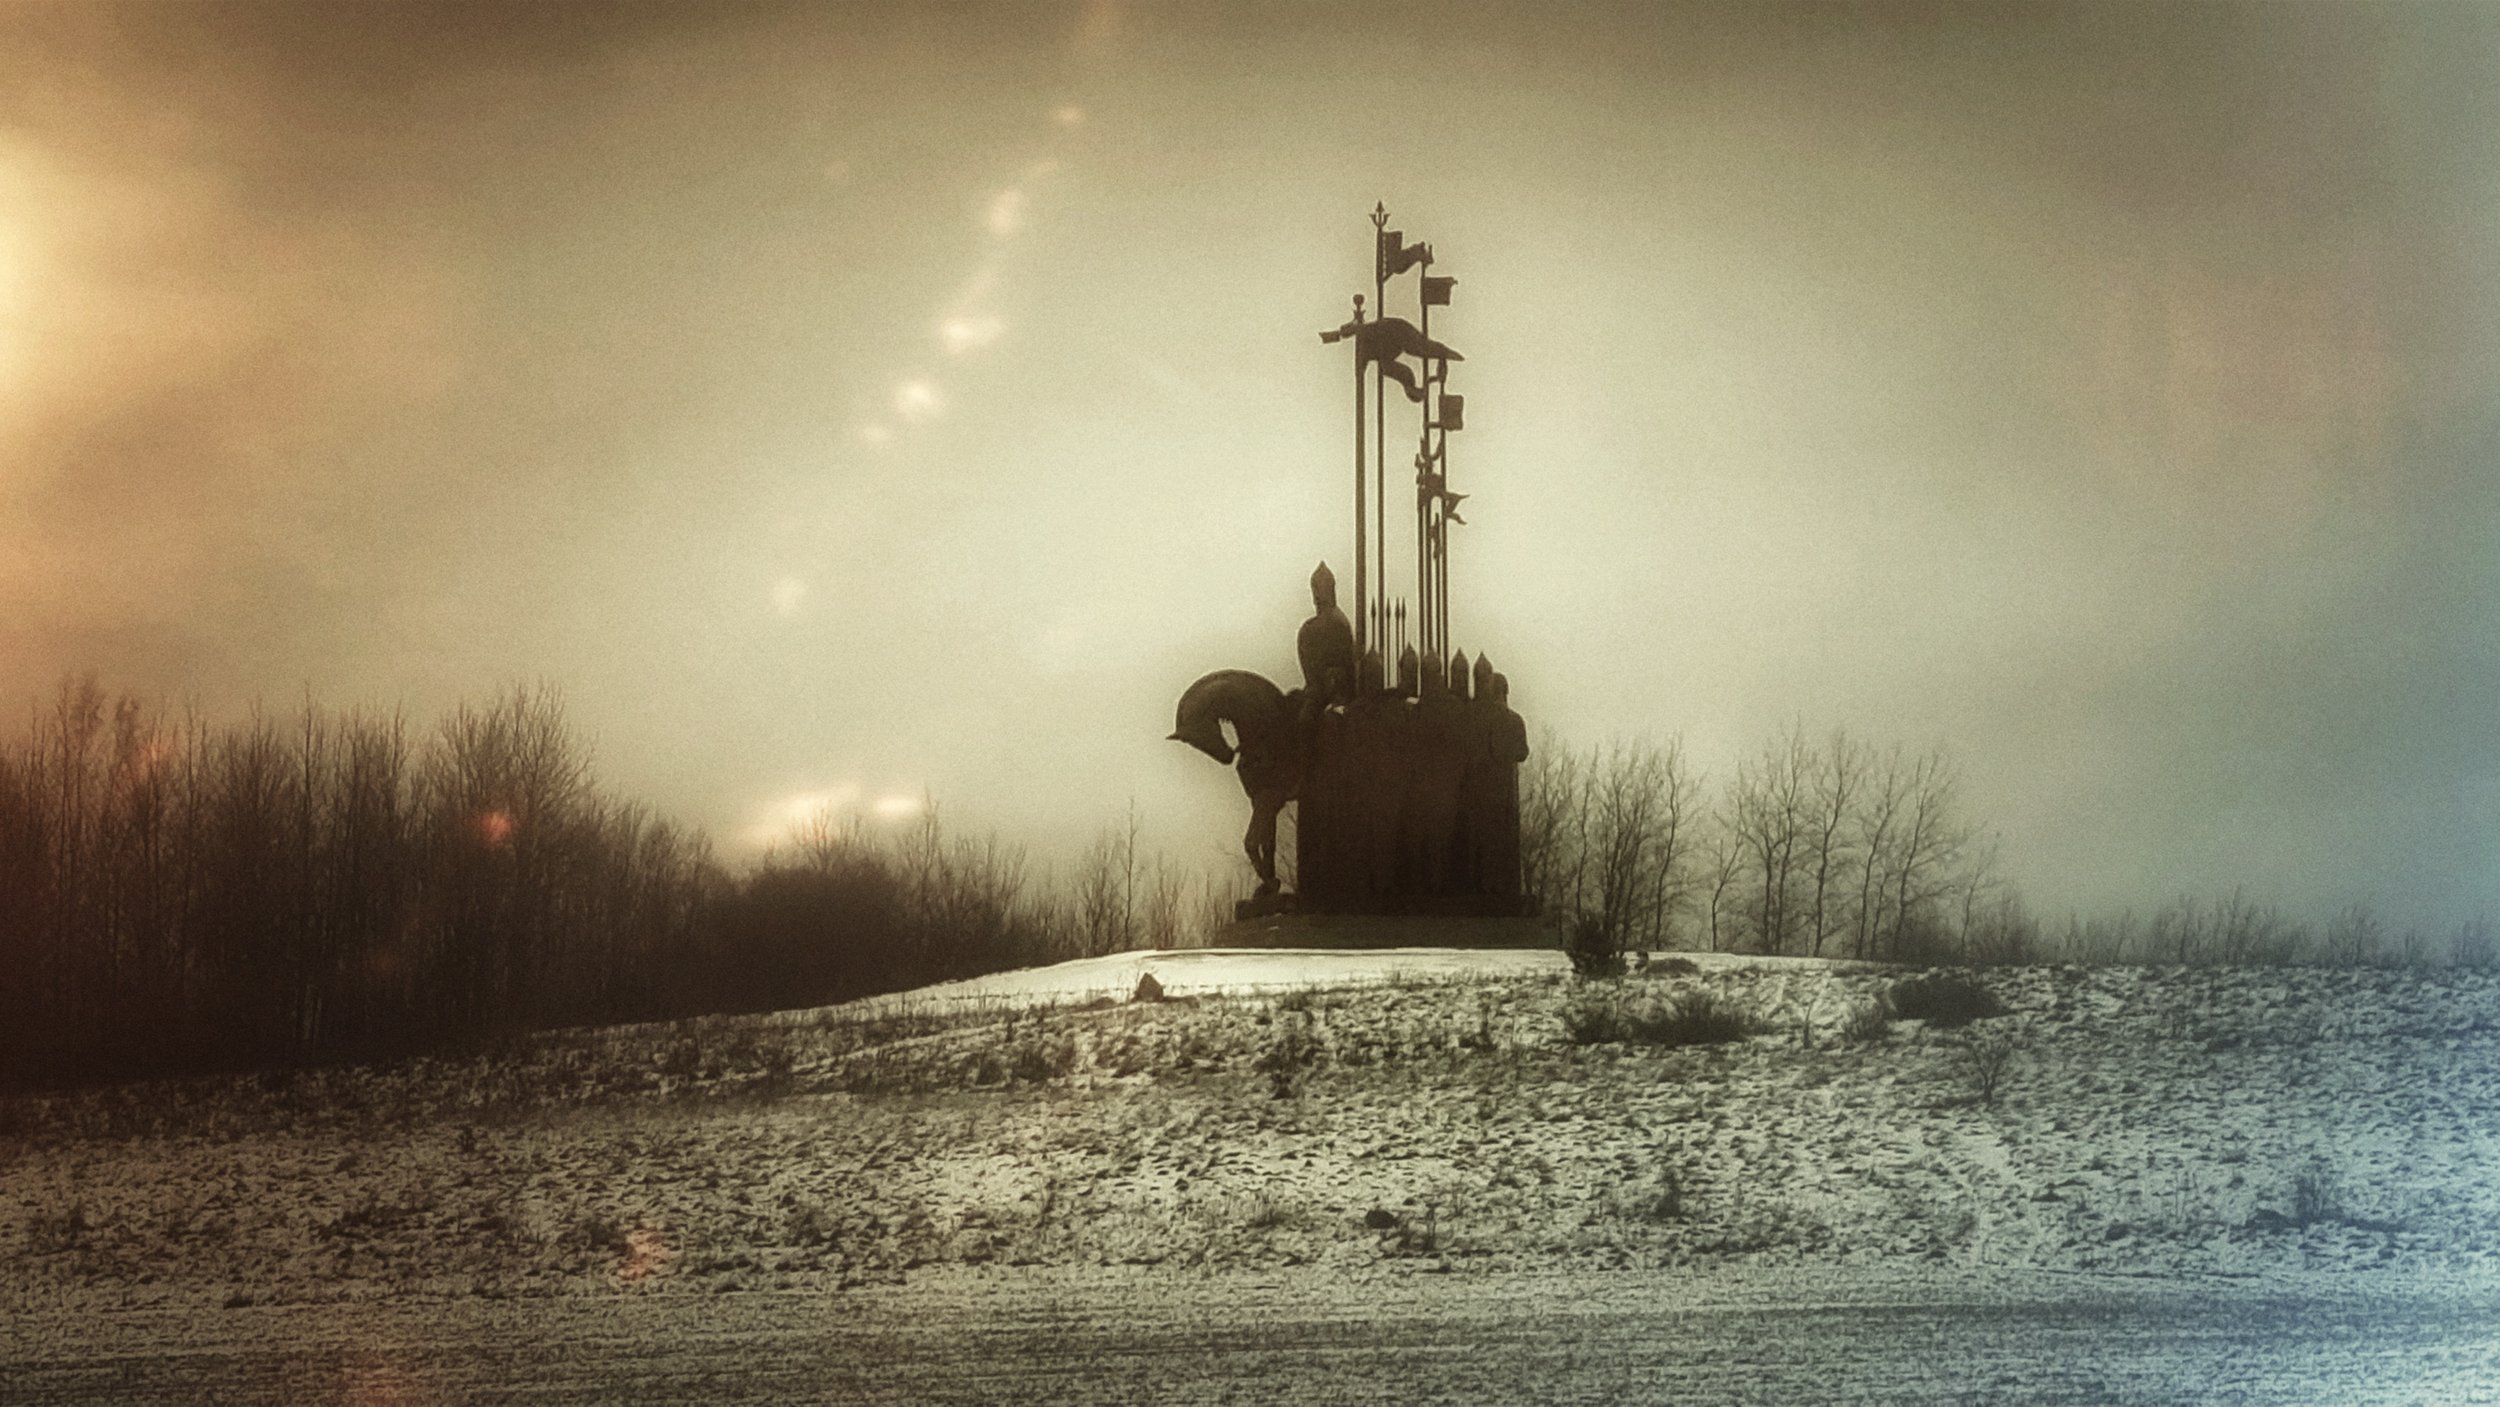 Монумент "Ледовое побоище" на горе Соколиха. Псков